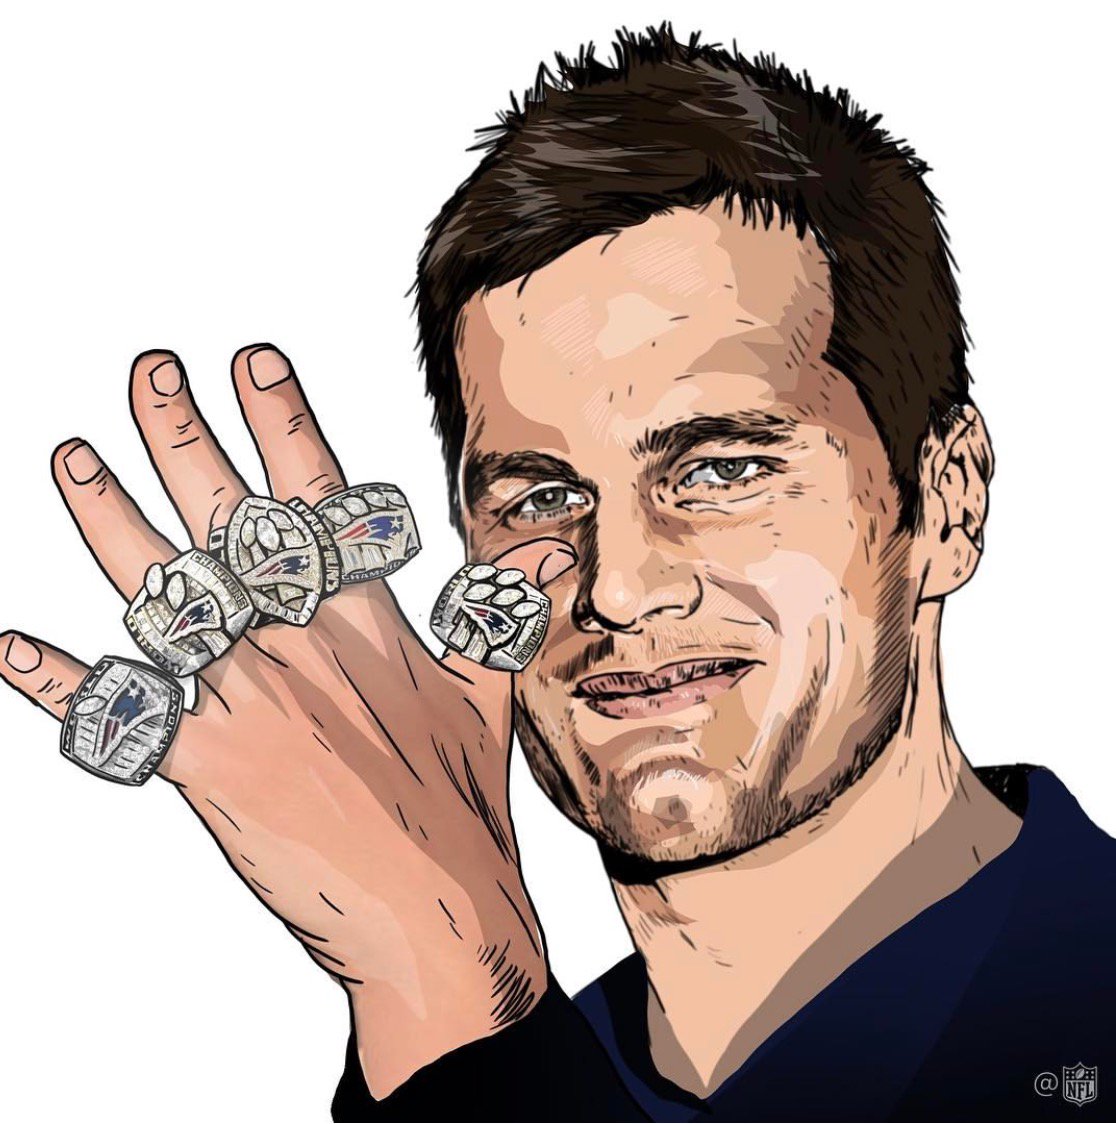 Happy birthday Tom Brady! 